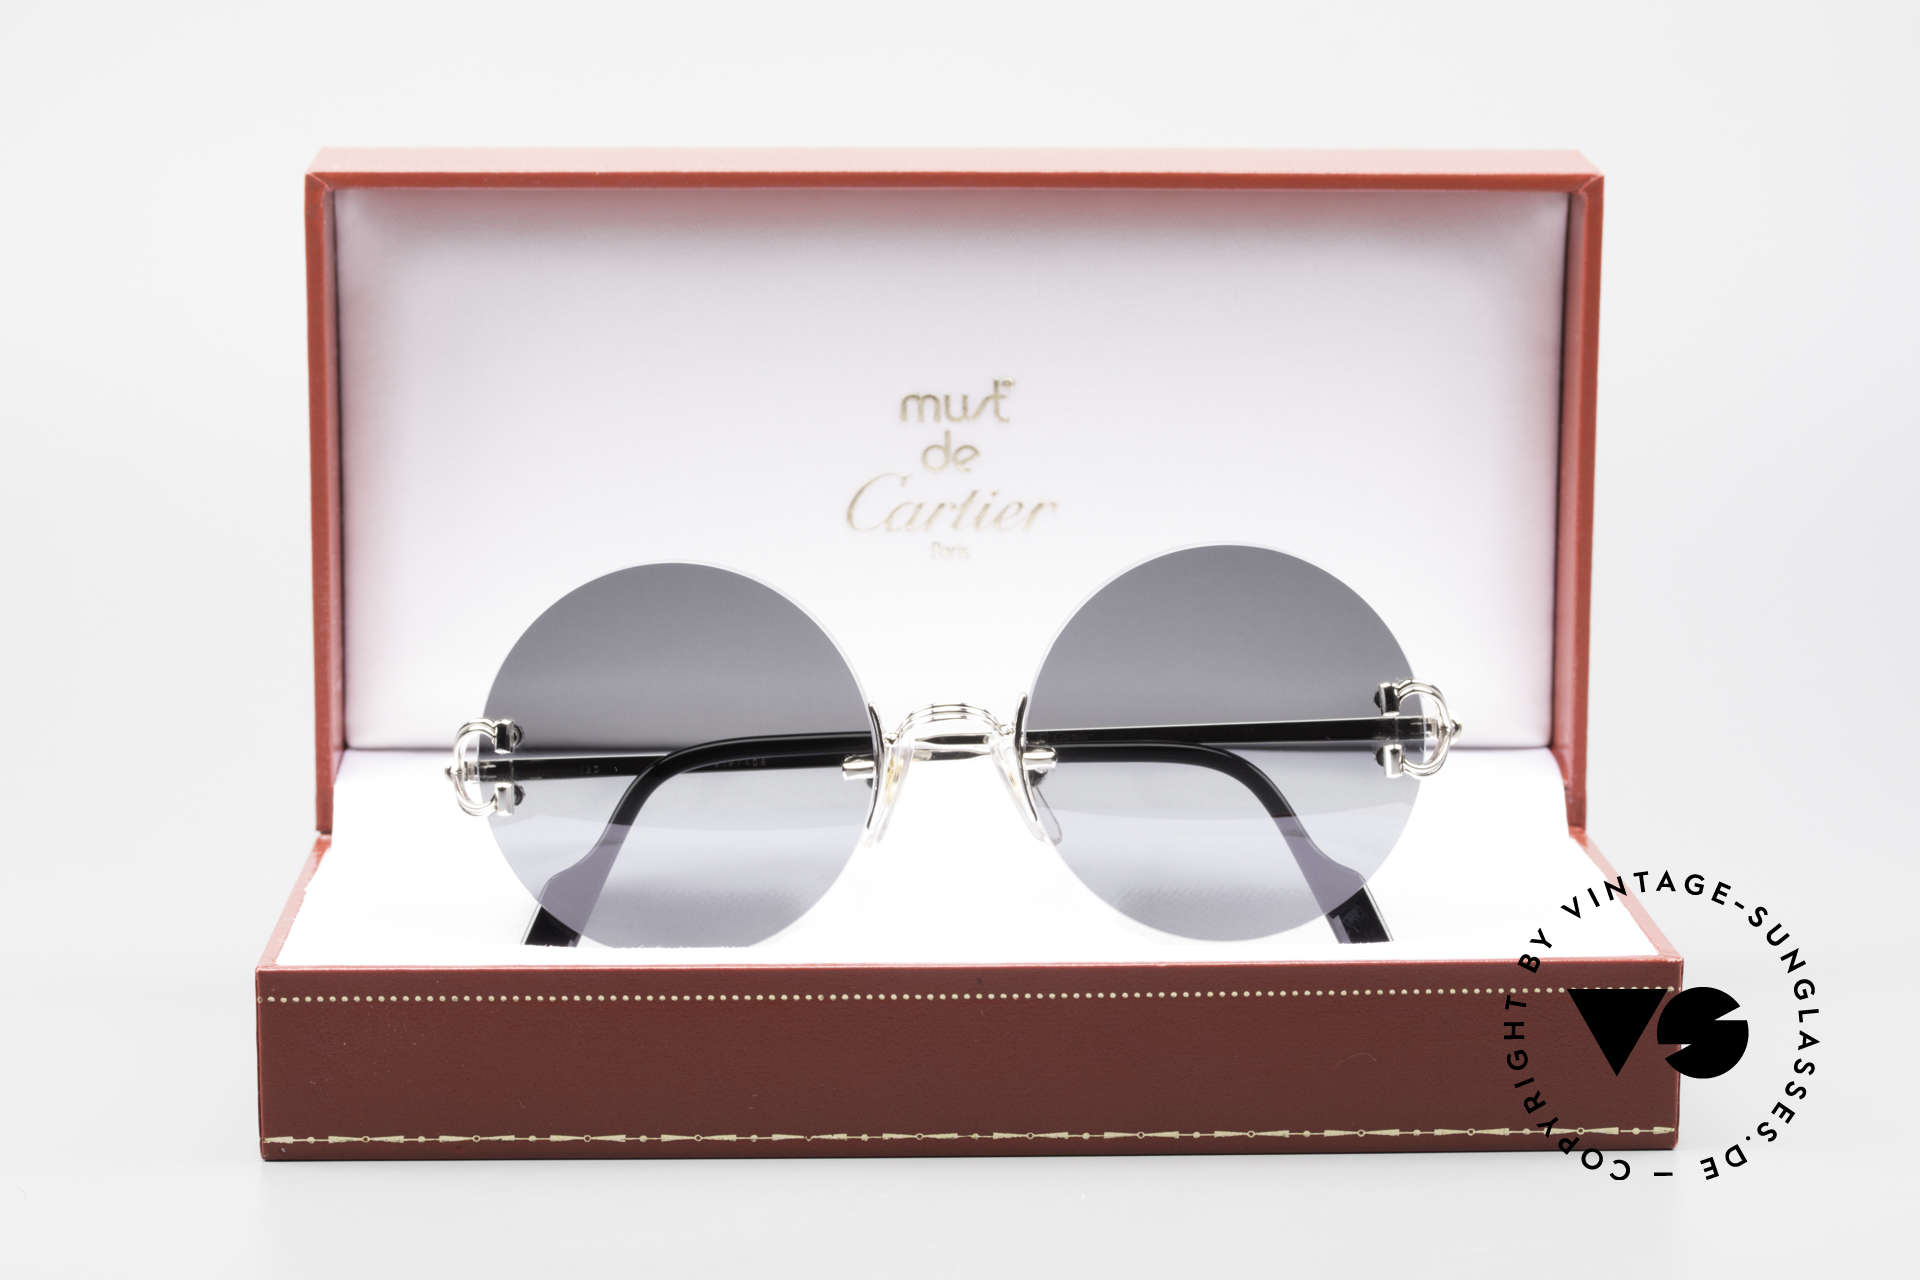 Cartier Madison Kleine Runde Randlose Brille, seltene Platin-Version und entsprechend kostbar, Passend für Herren und Damen